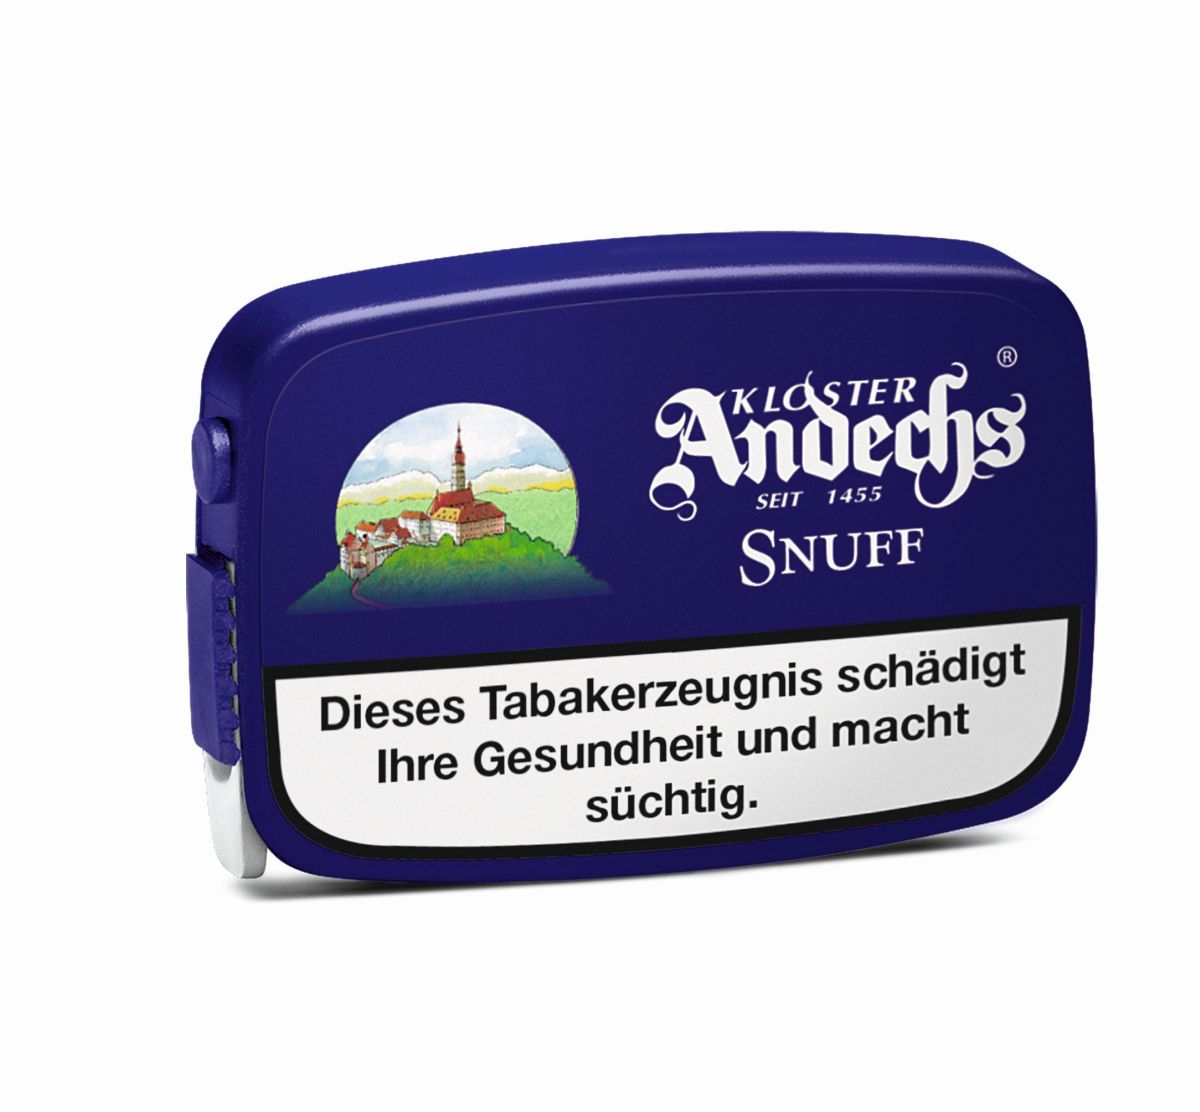 Pöschl Andechs Snuff Schnupftabak bei www.Tabakring.de kaufen